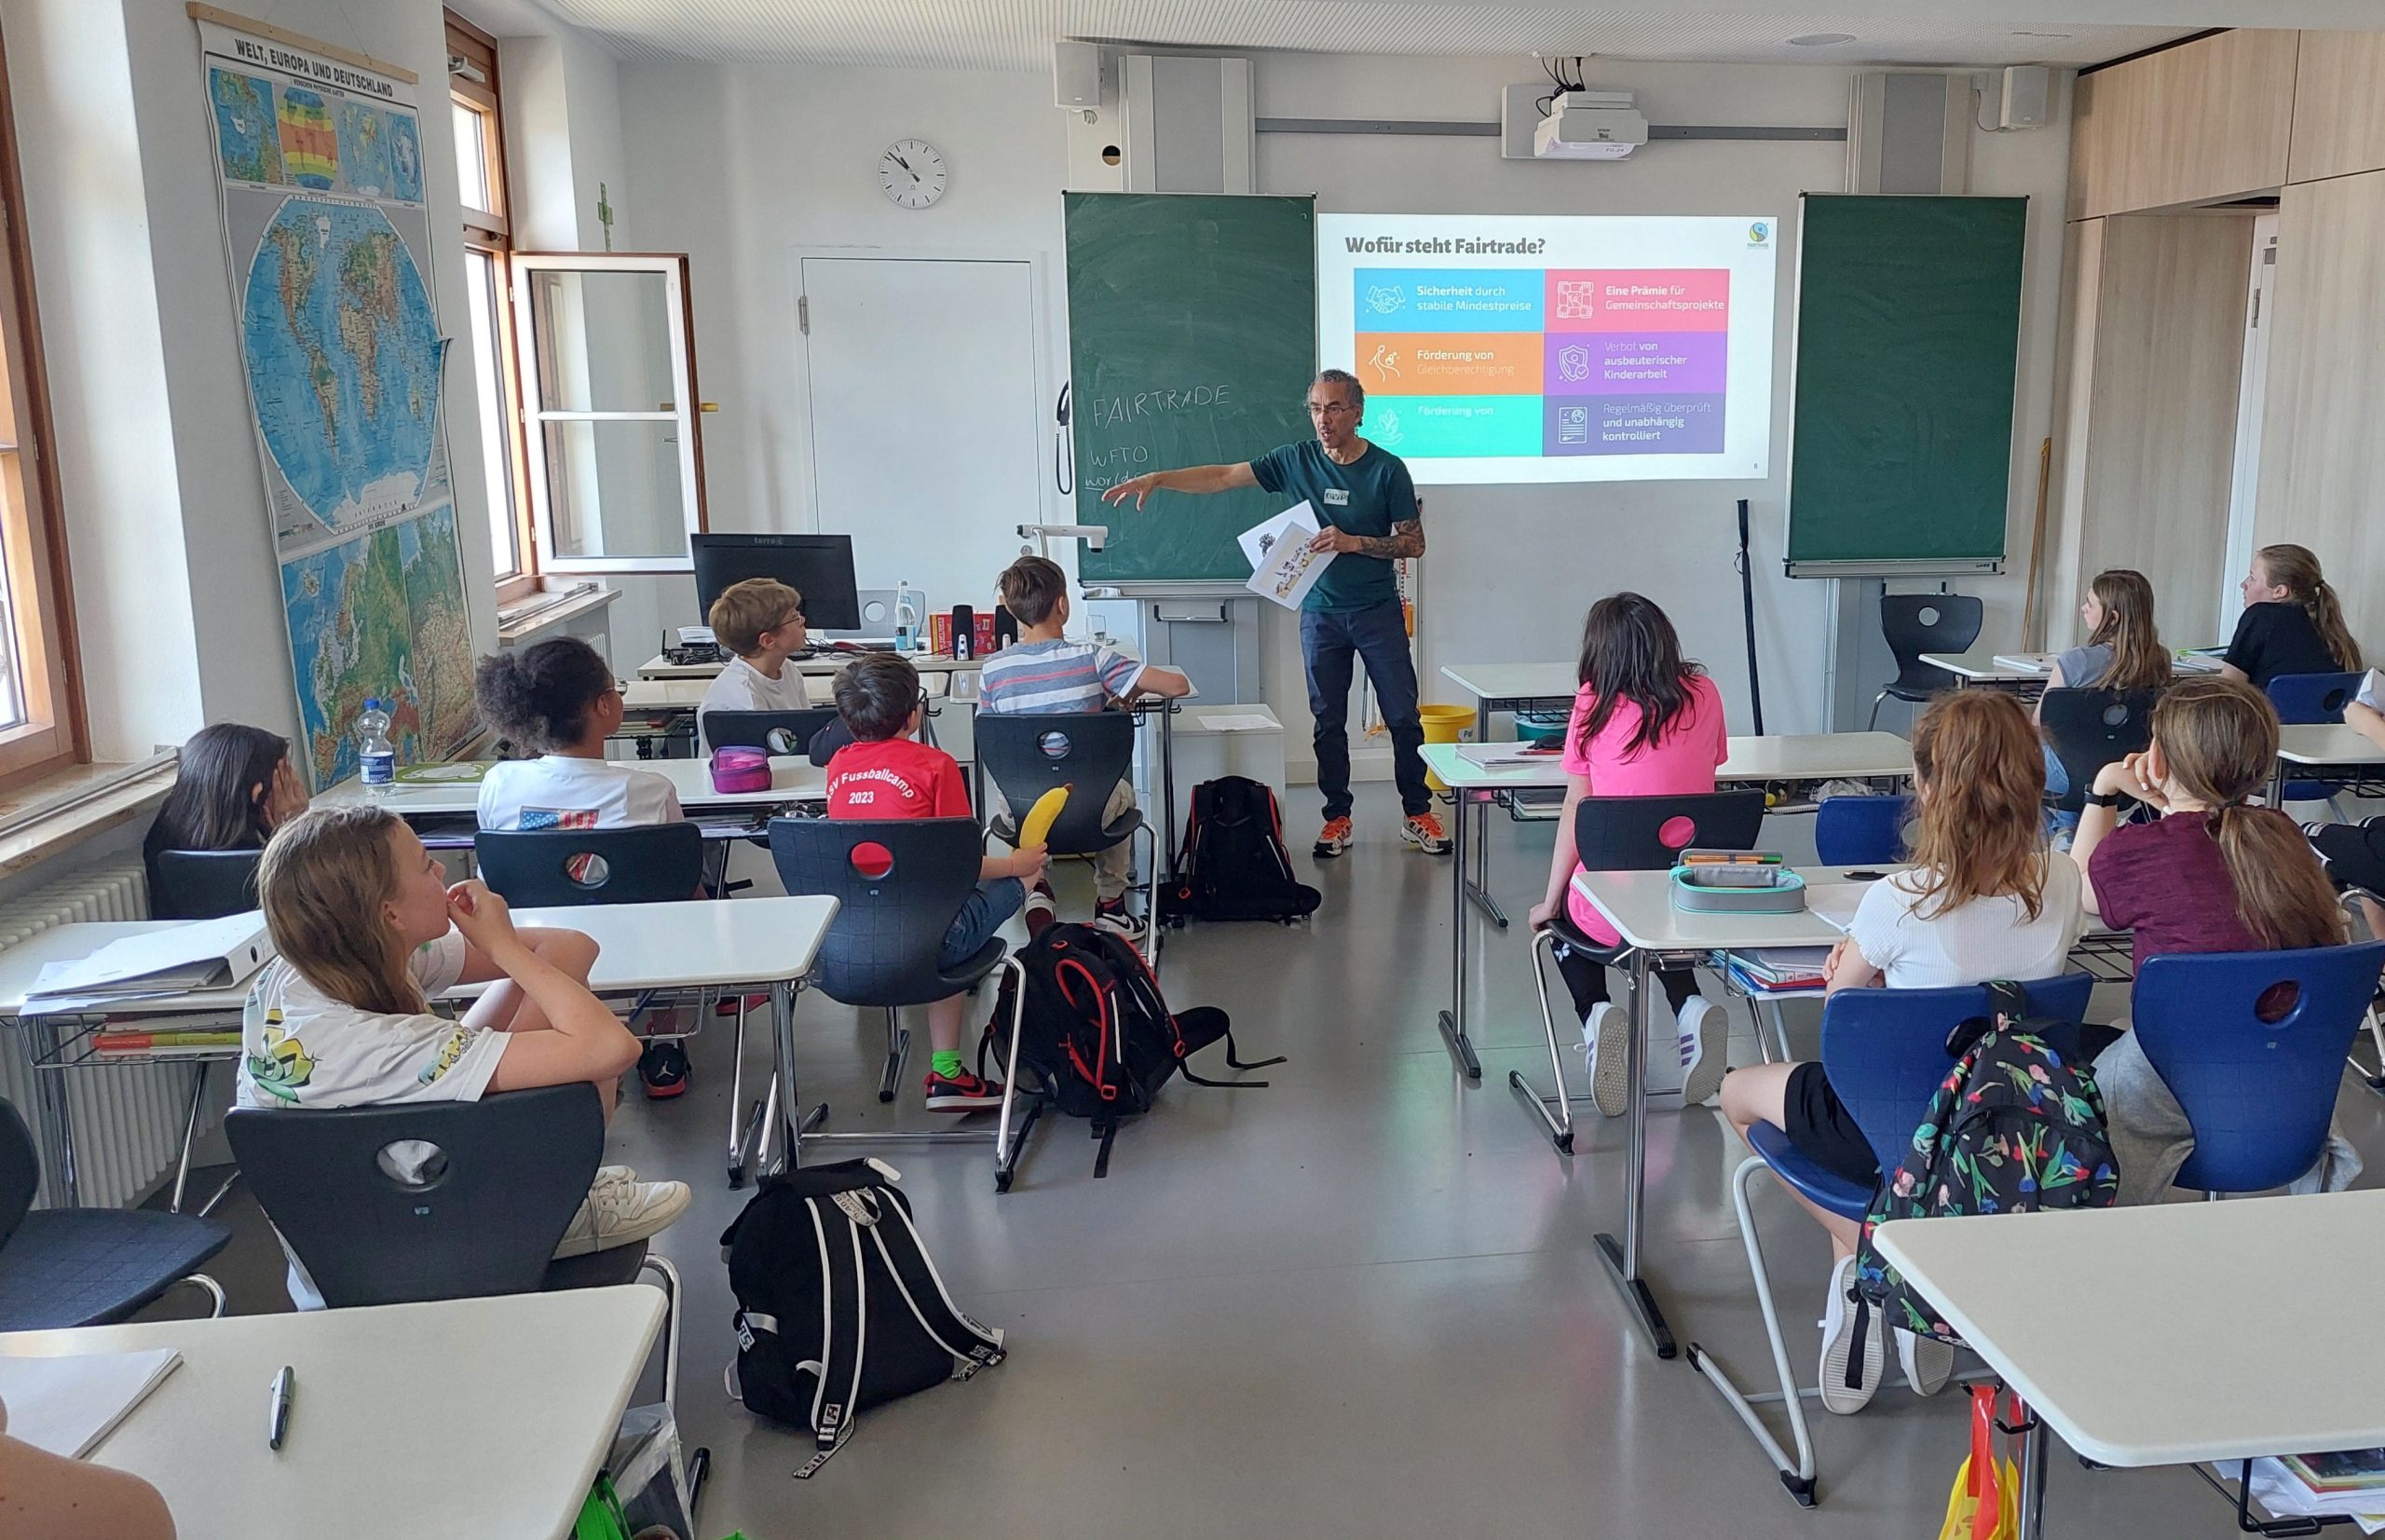 Von Maria lernen: Marienrealschule startet Unterrichtsreihe zum Schulmotto